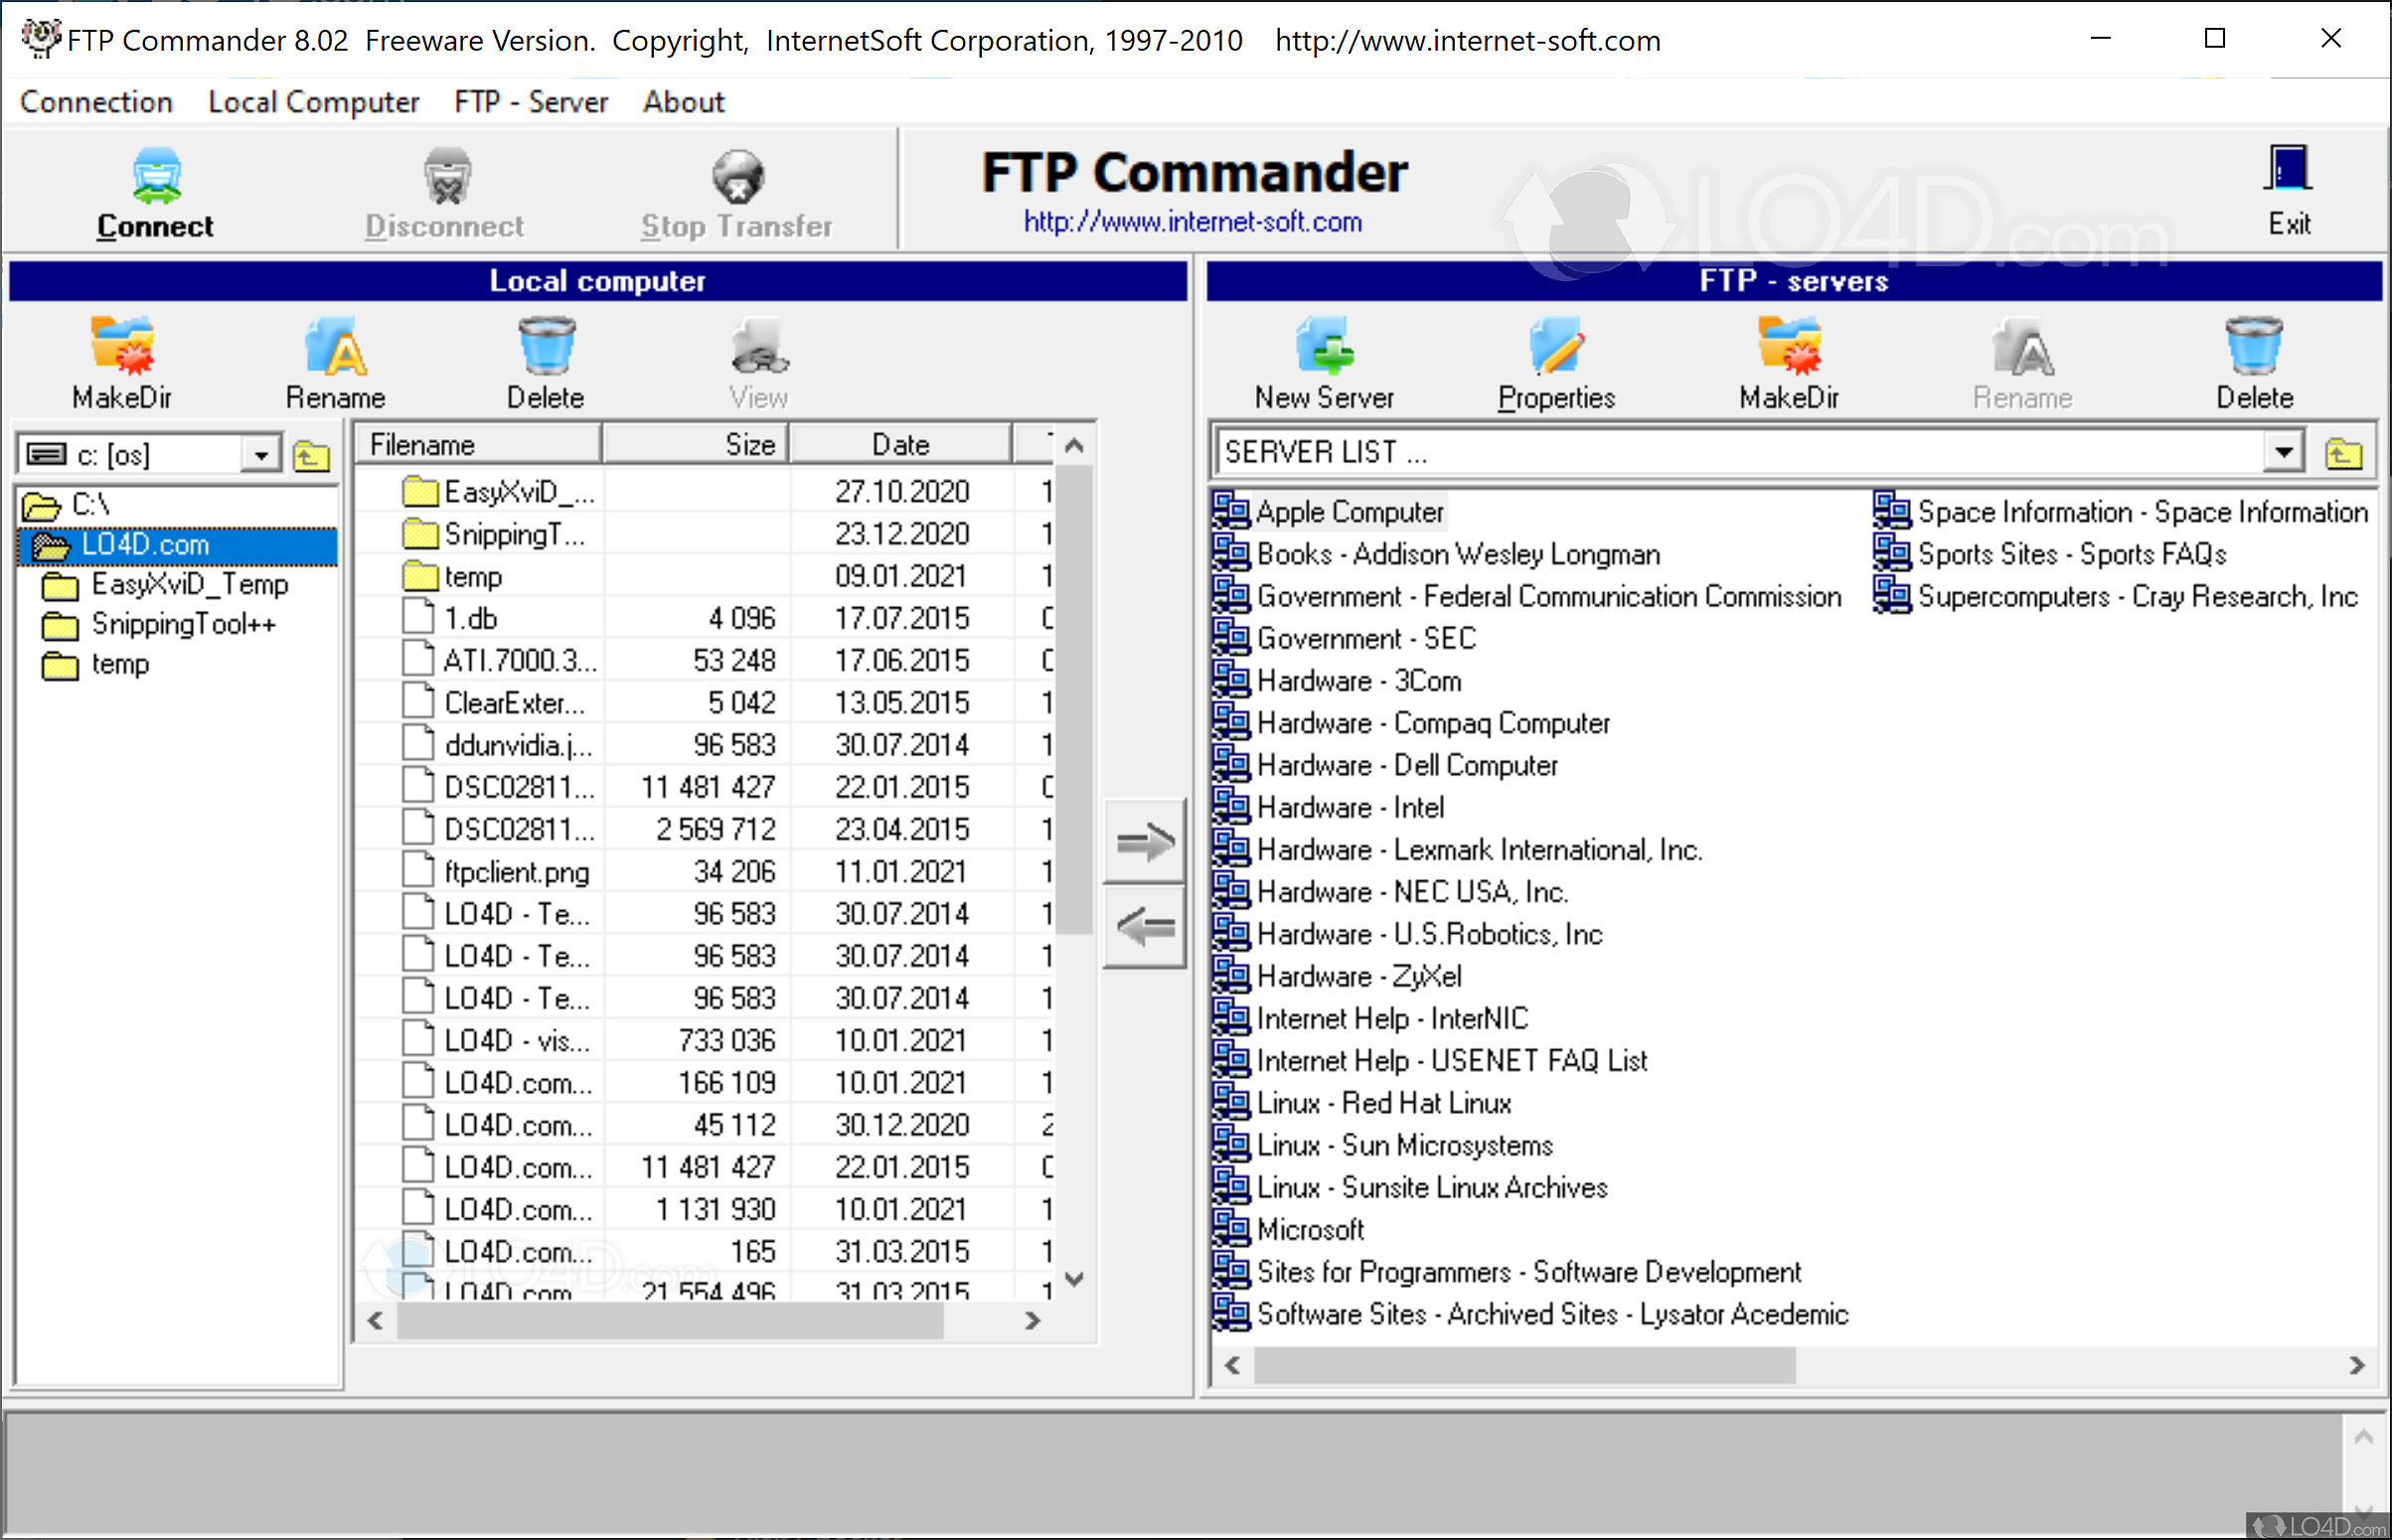 for windows instal SmartFTP Client 10.0.3184